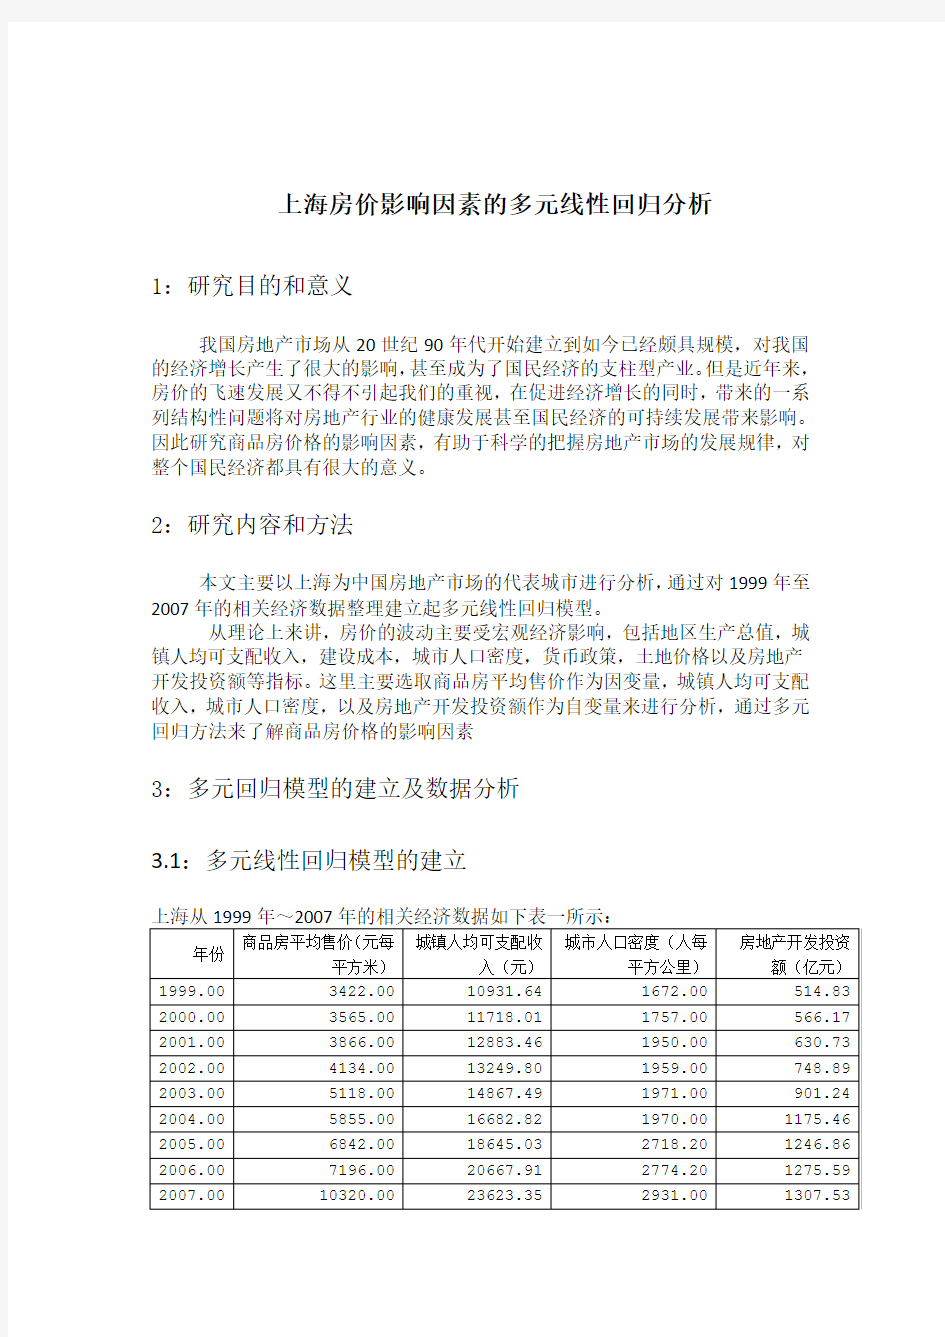 上海房价影响因素SPSS多元线性回归分析